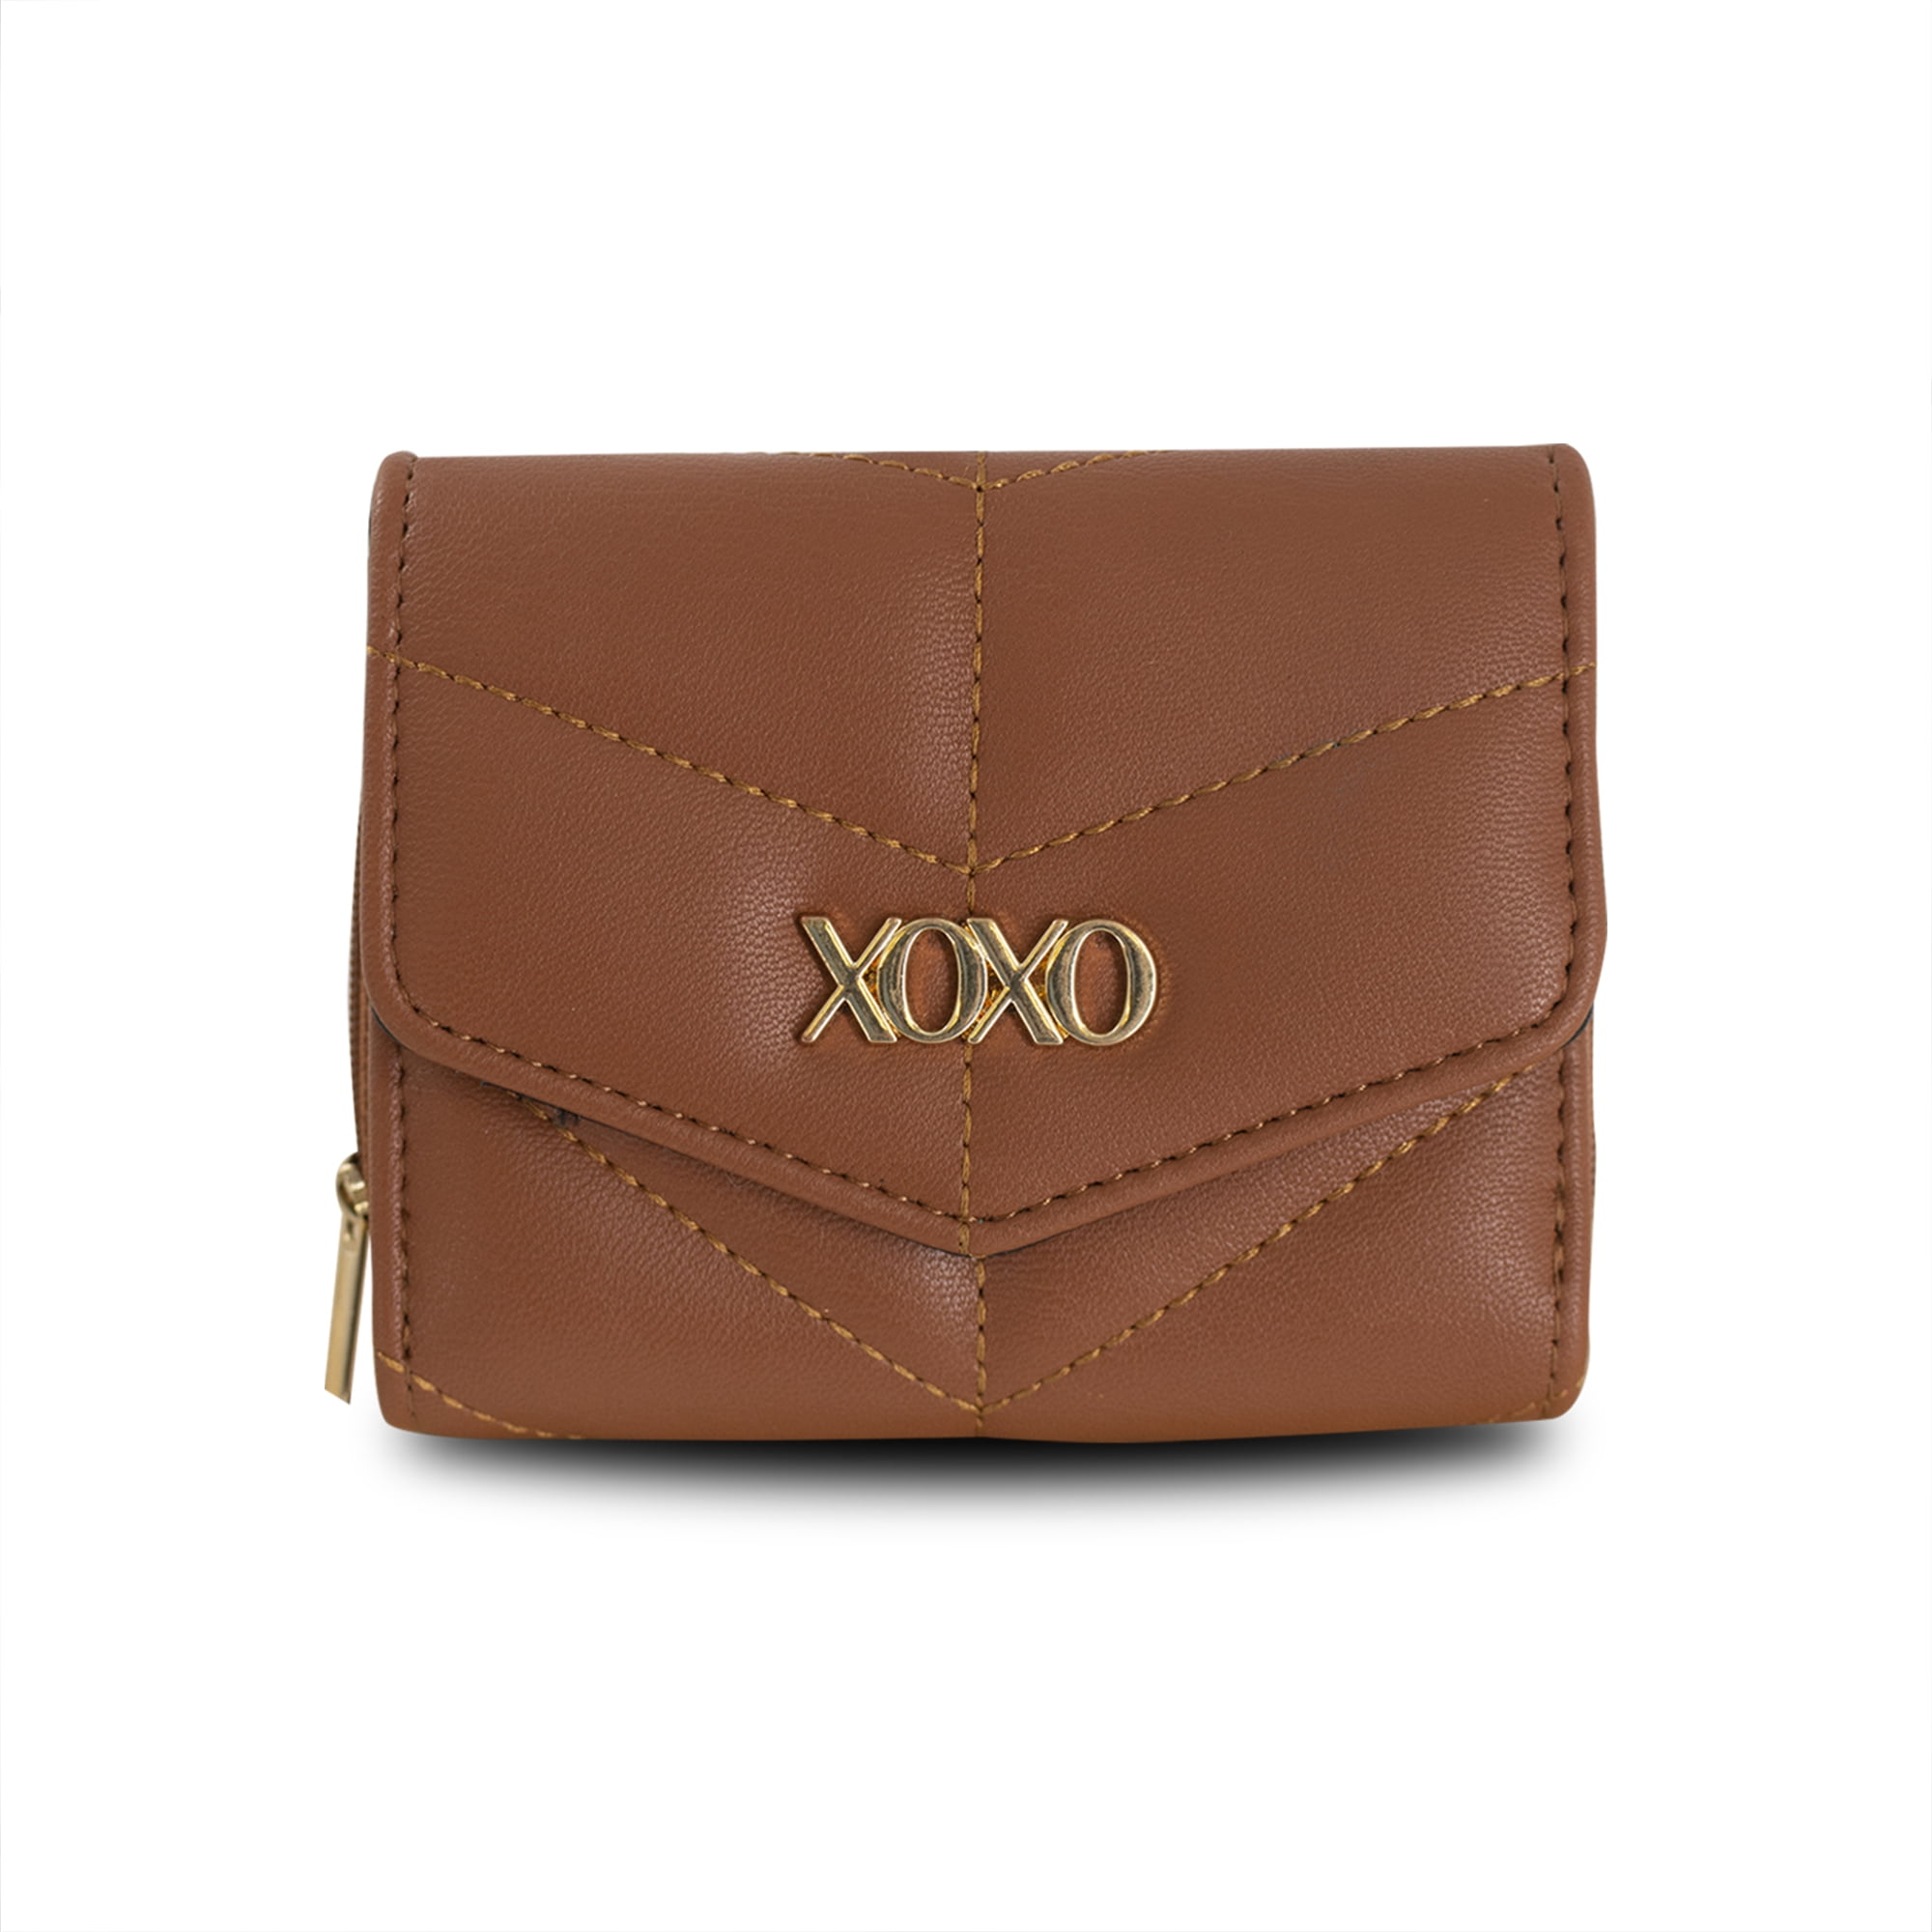 Women's Long Leather Wallet Template | Women's Wallet Pattern